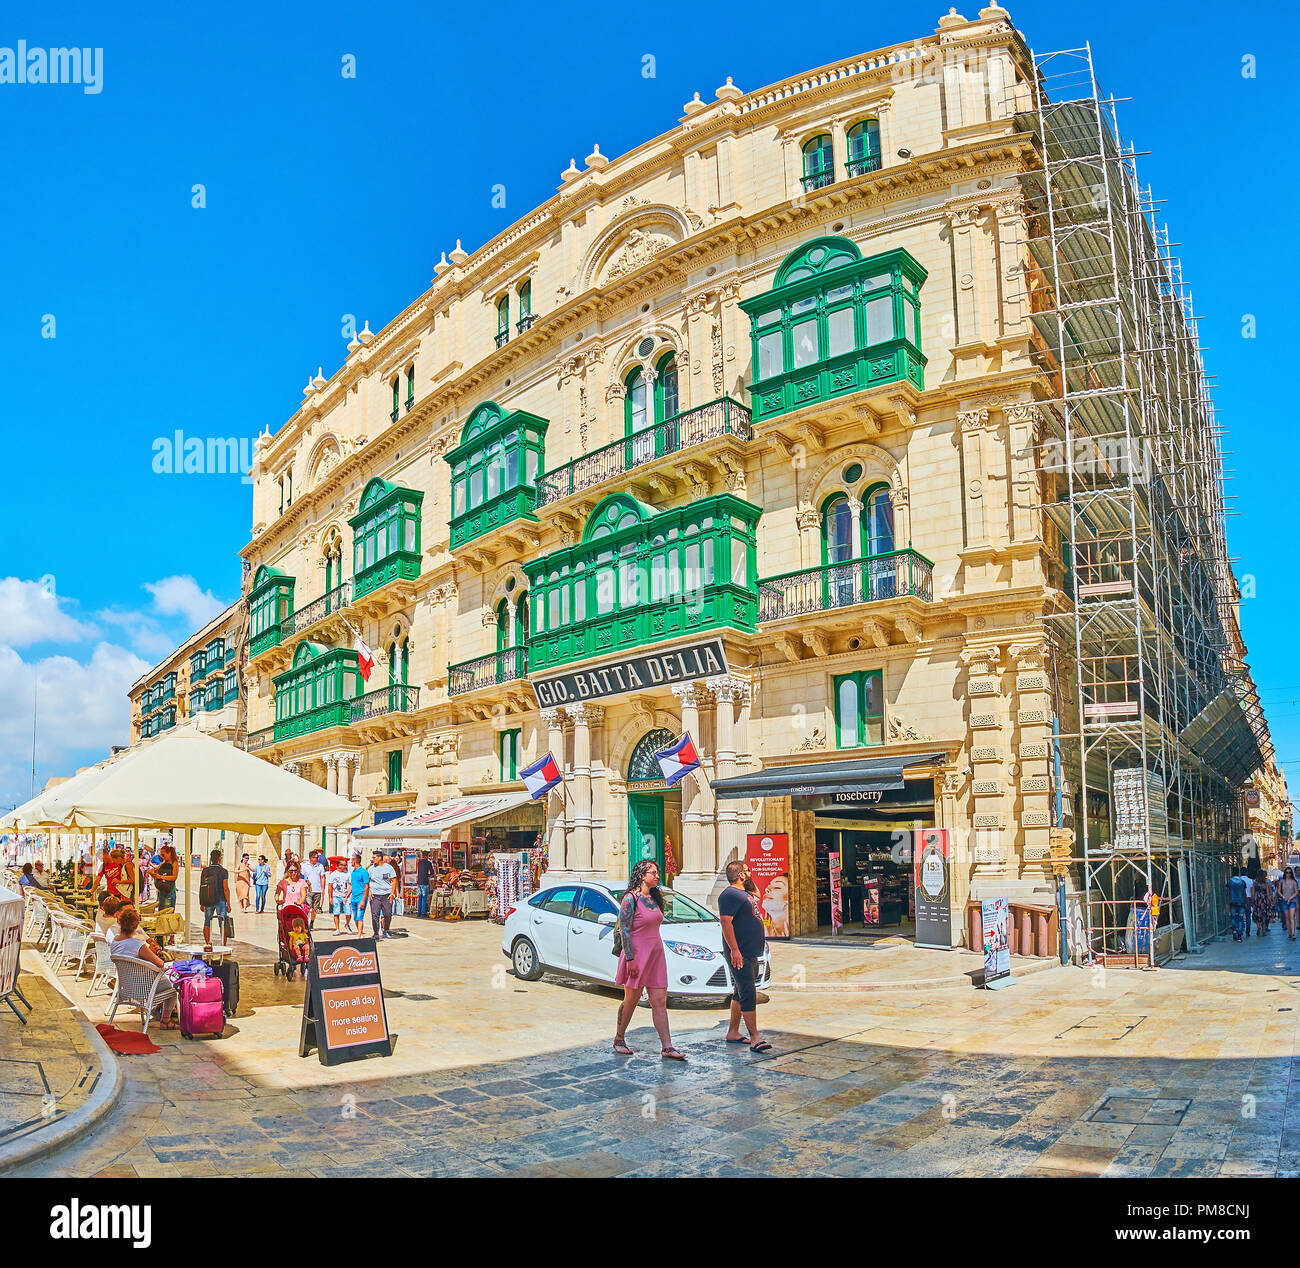 La Valletta, Malta - 17 giugno 2018: Panorama del palazzo storico in Repubblica Street con negozi e stalle al piano terra e scenic Maltese verde Foto Stock